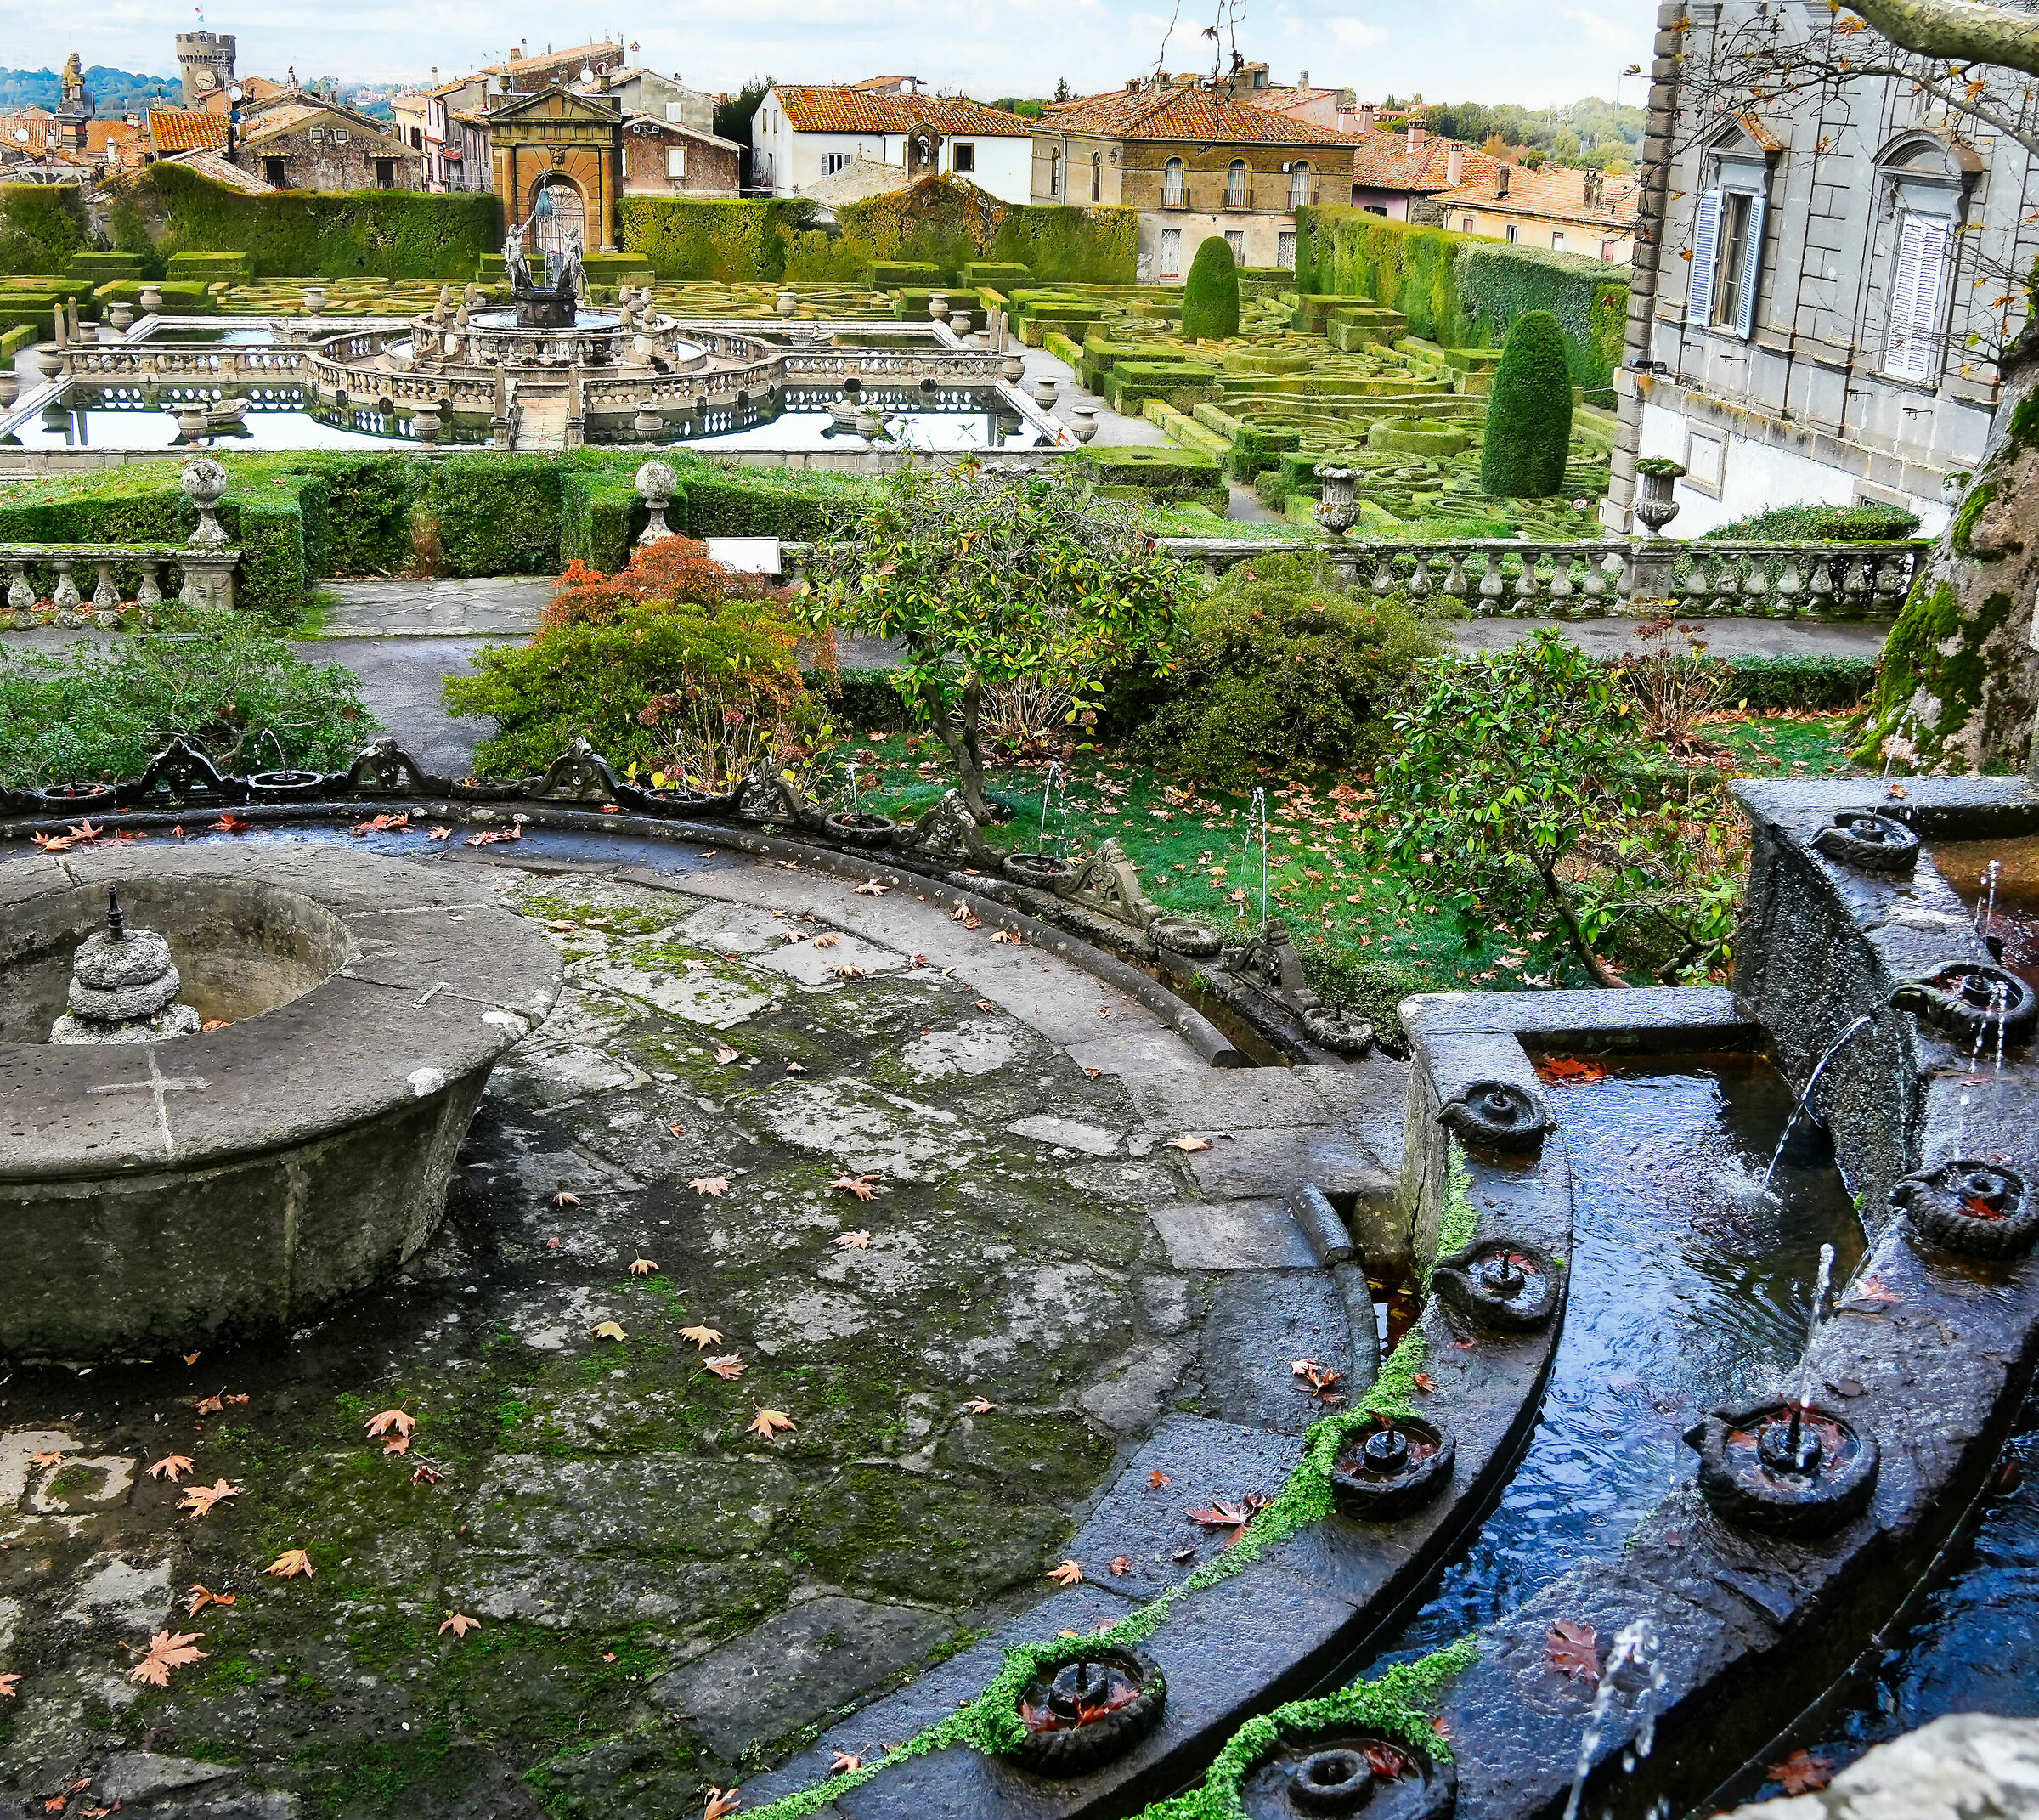 the garden of Villa Lante in Bagnaia (VT)...